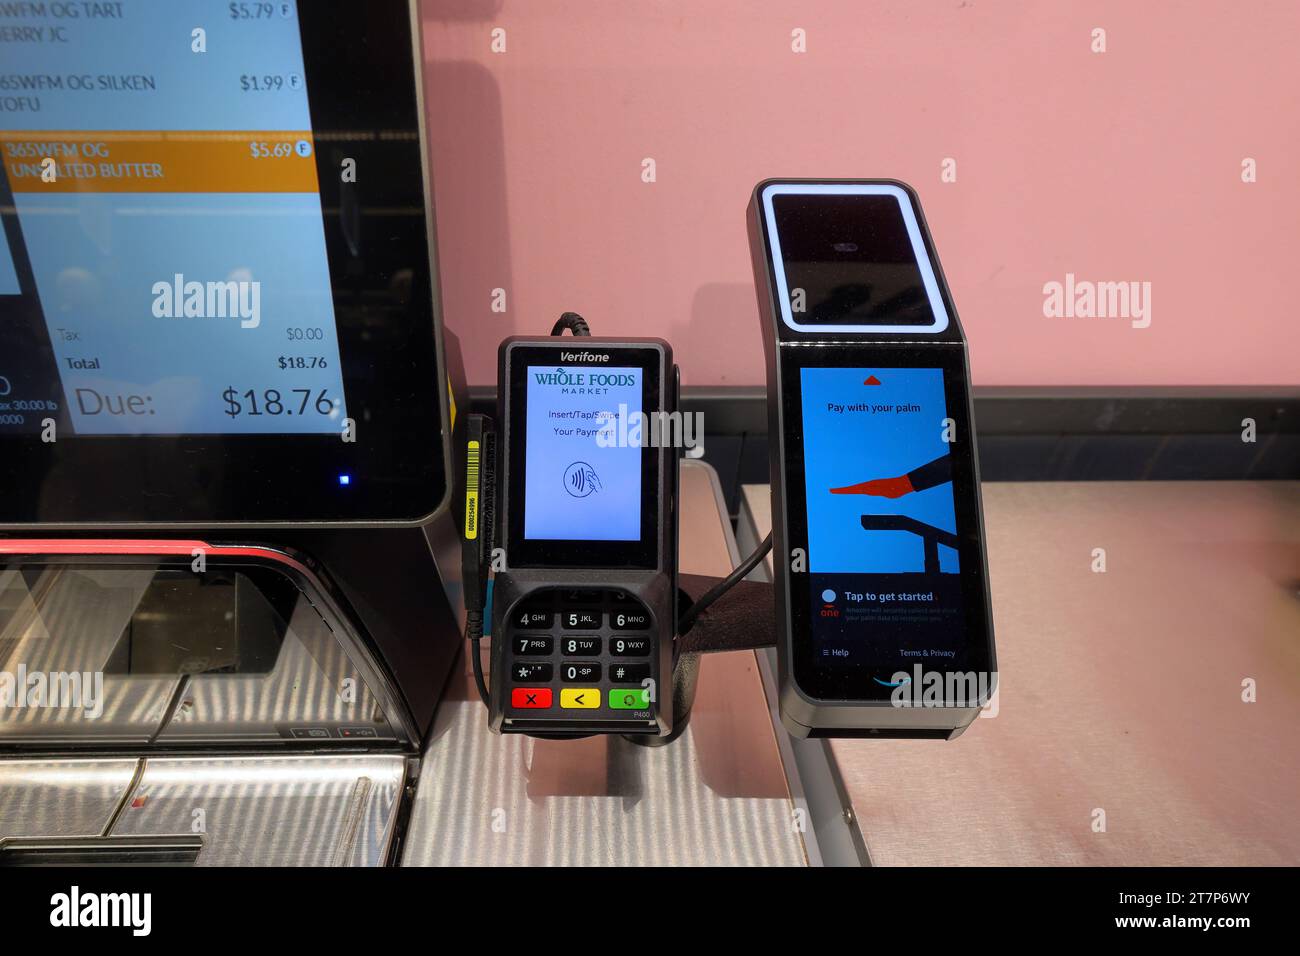 Un appareil de paiement avec reconnaissance de la paume Amazon One et un lecteur de carte de crédit sans contact Verifone lors d’une caisse en libre-service. Banque D'Images